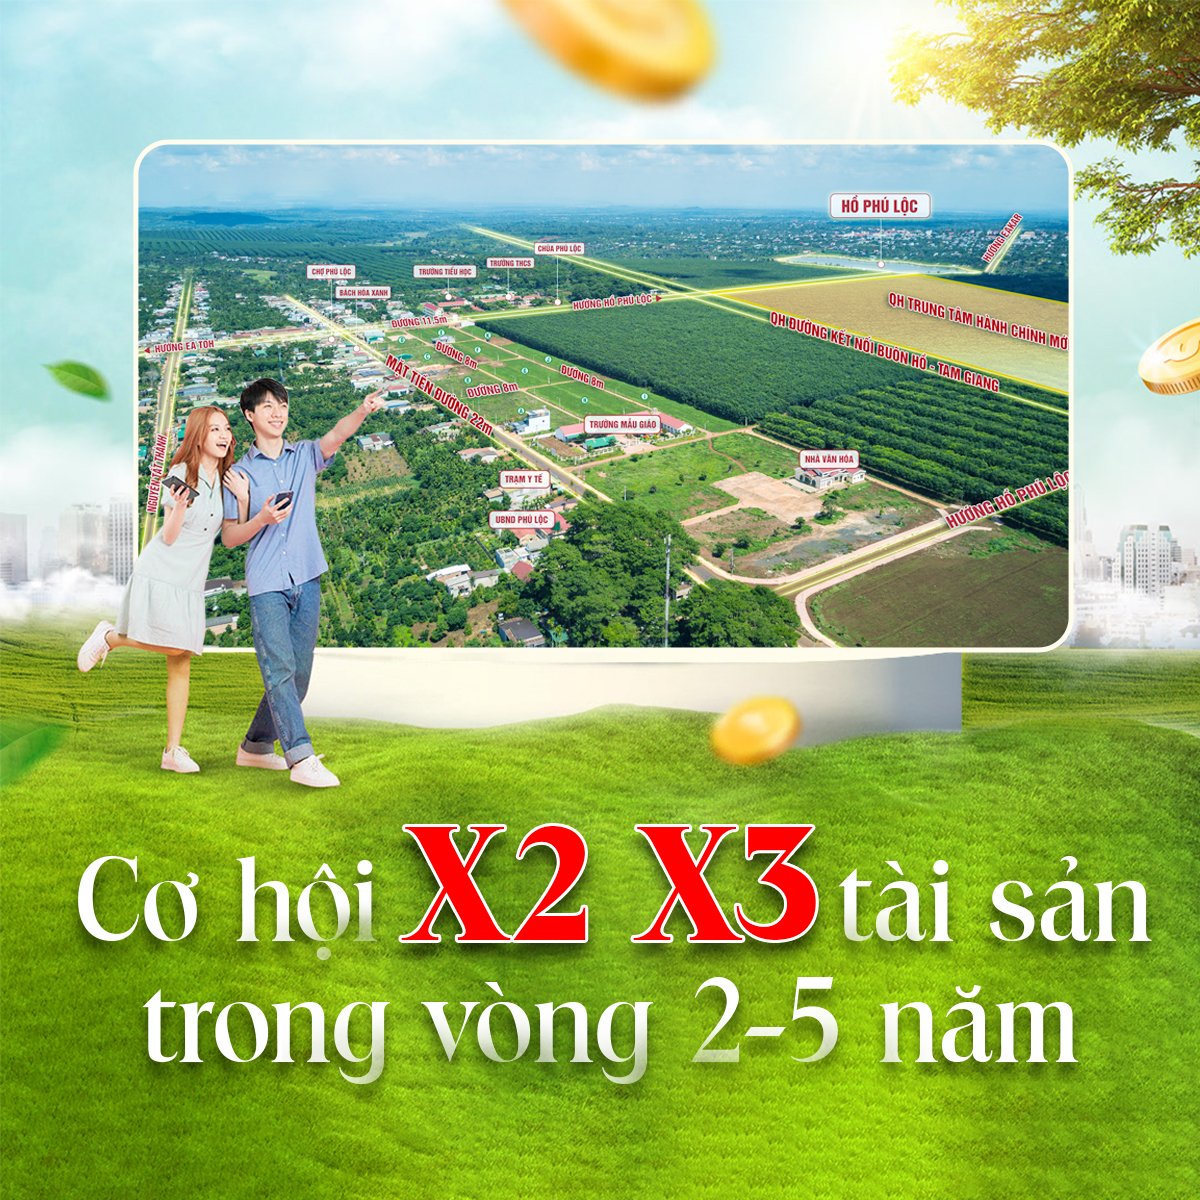 Bán đất trồng cây 21913m2, sổ đỏ,3 mặt tiền,Hoà Thắng,Bắc Bình,Bình Thuận 4